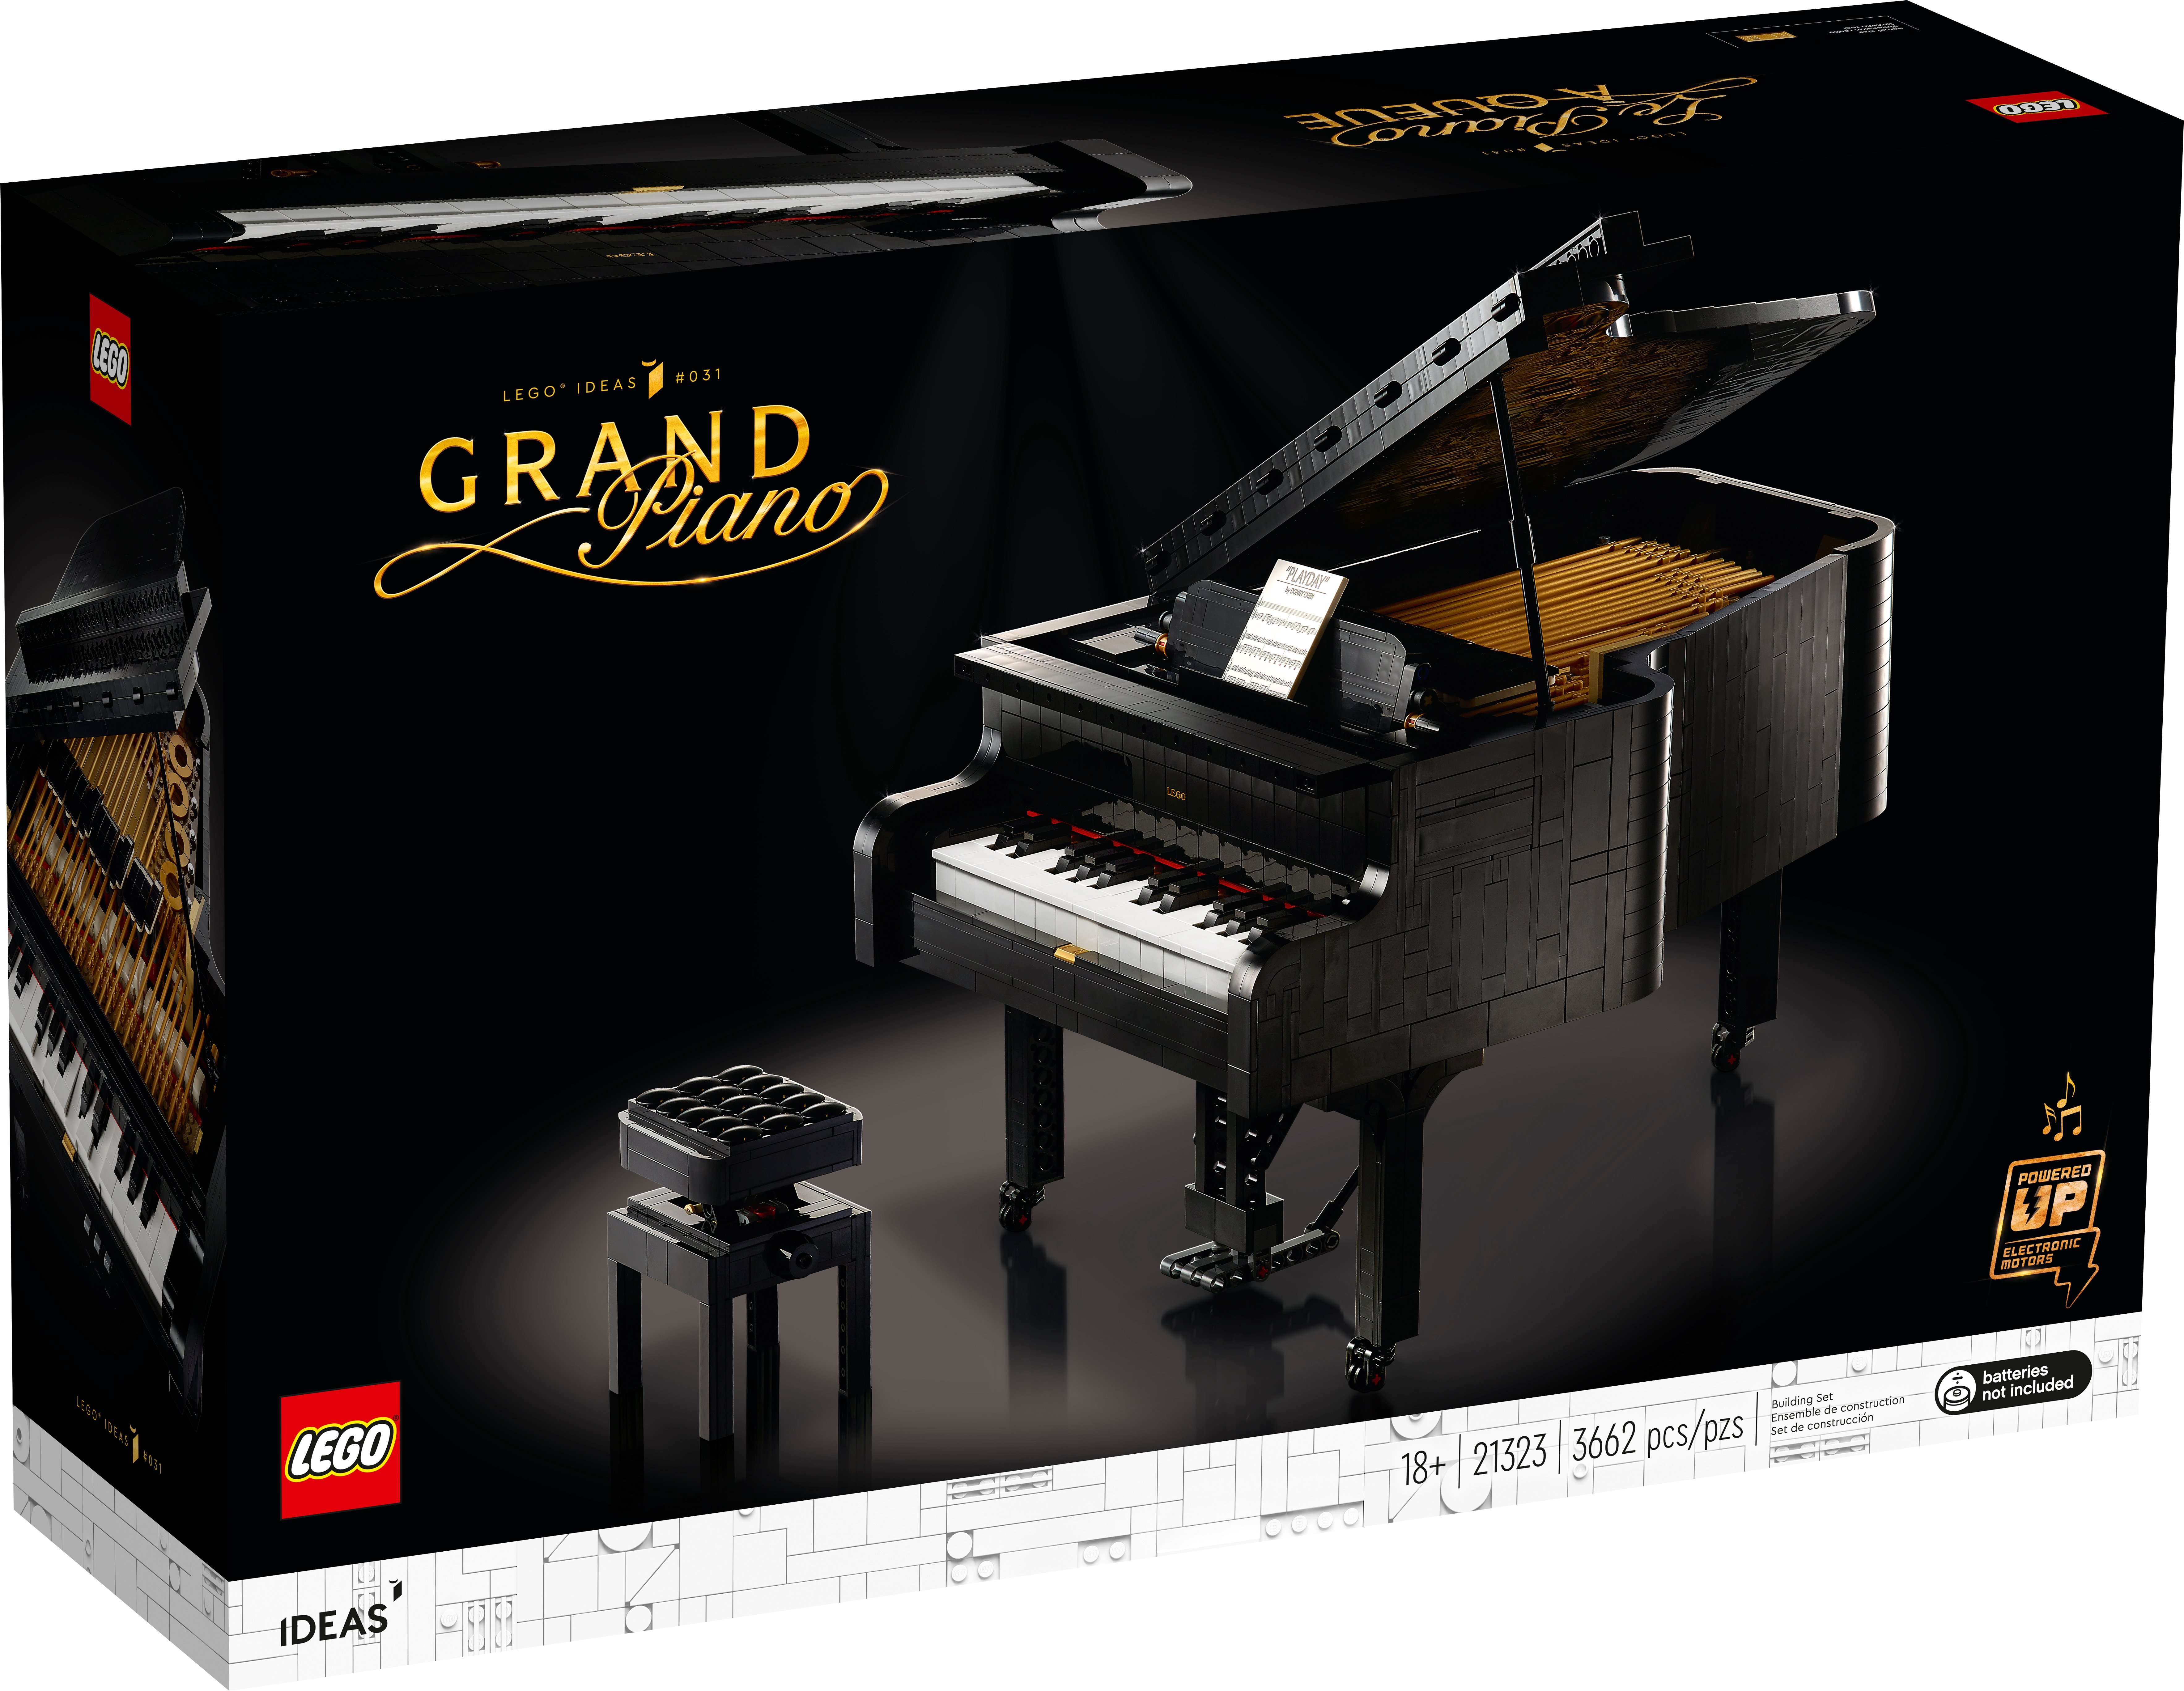 Grand Piano 21323, Ideas